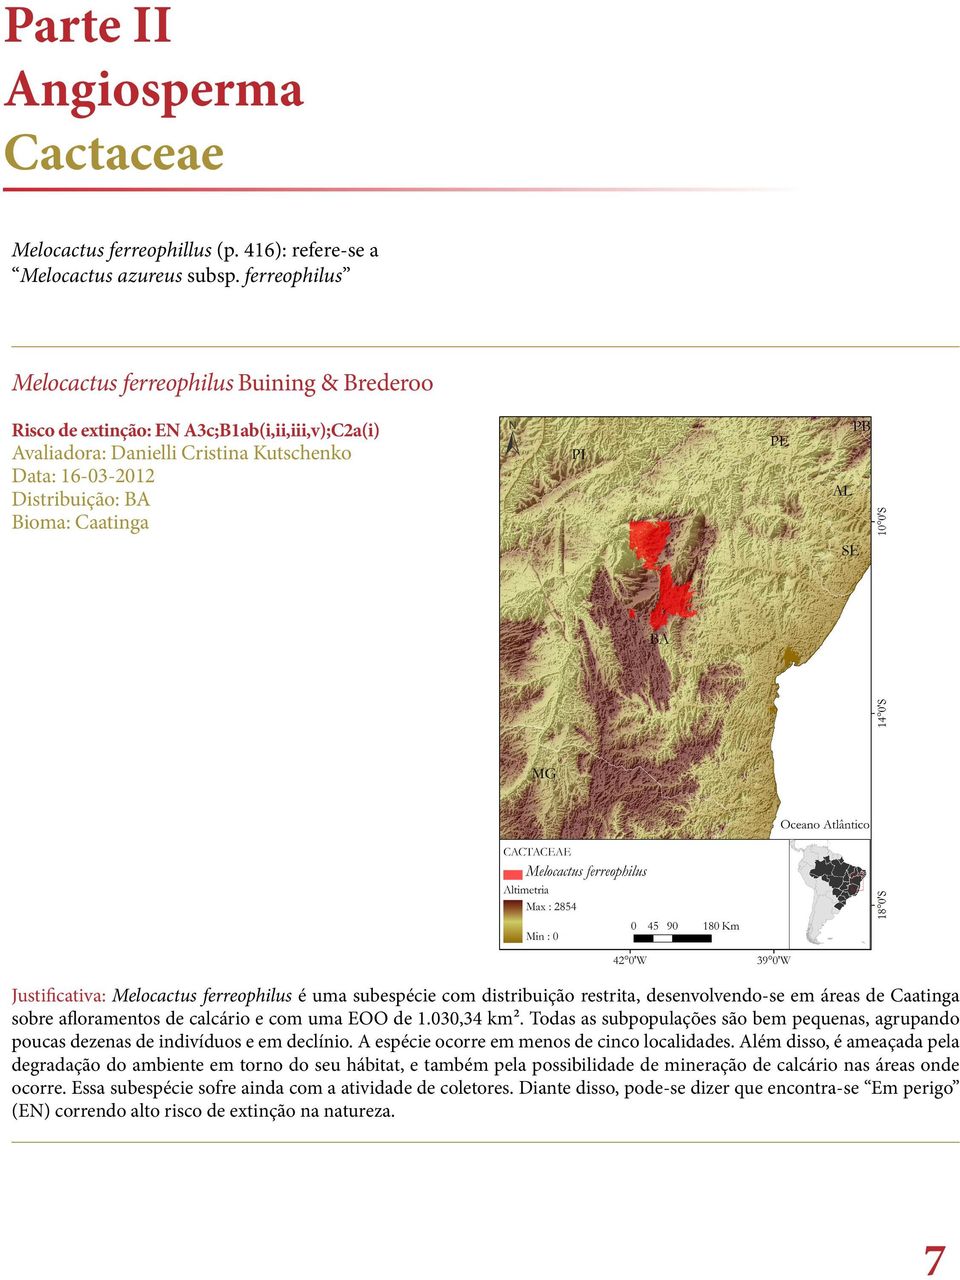 Justificativa: Melocactus ferreophilus é uma subespécie com distribuição restrita, desenvolvendo-se em áreas de Caatinga sobre afloramentos de calcário e com uma EOO de 1.030,34 km².